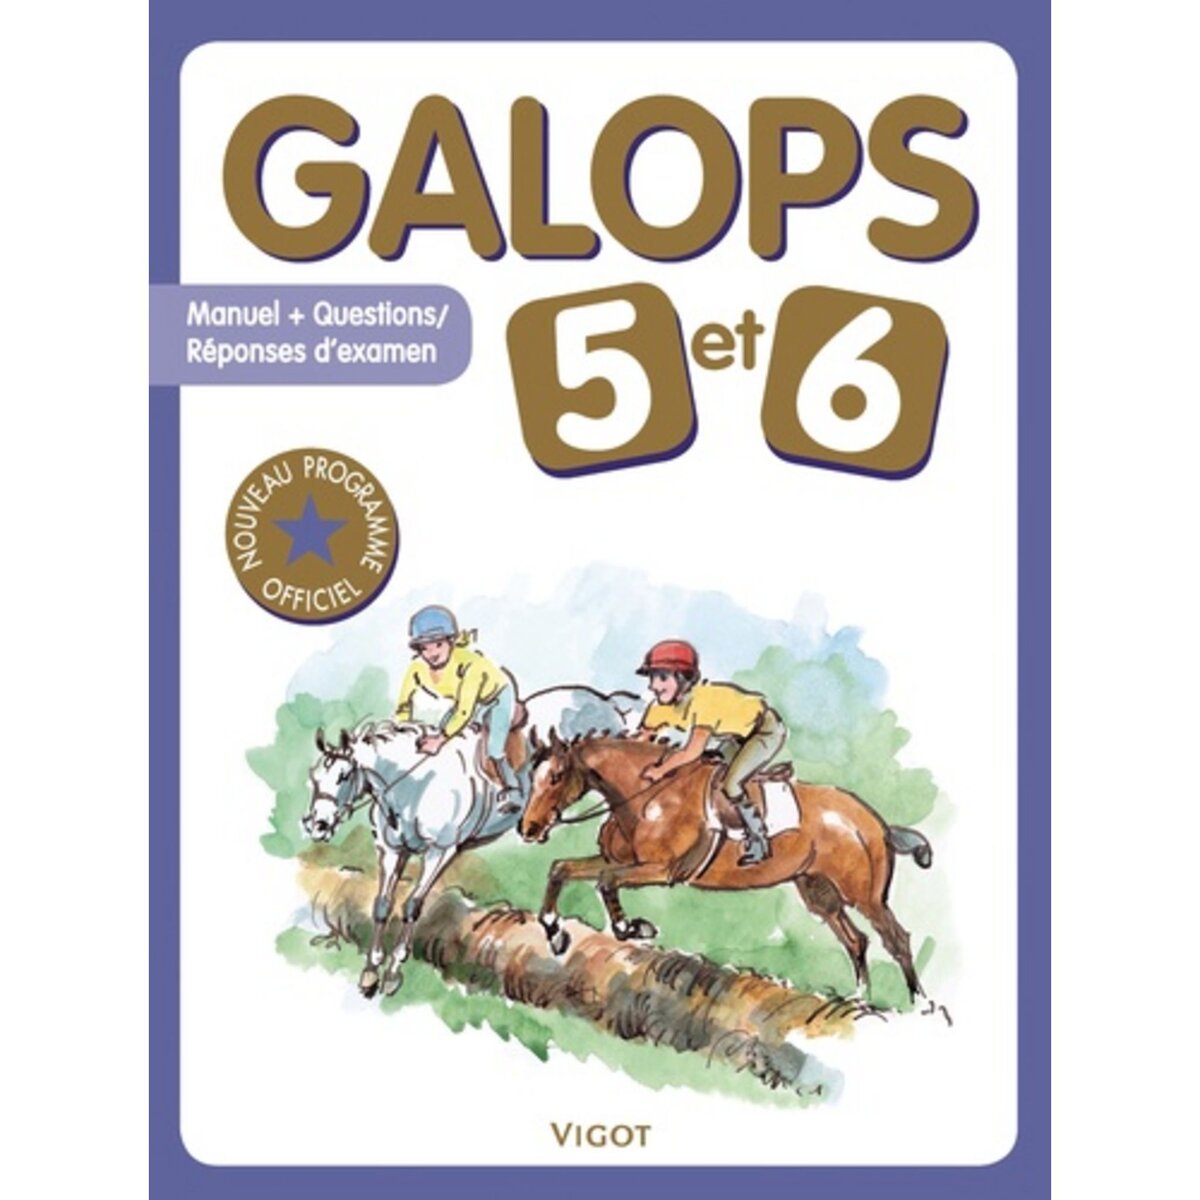  GALOPS 5 ET 6, Vigot